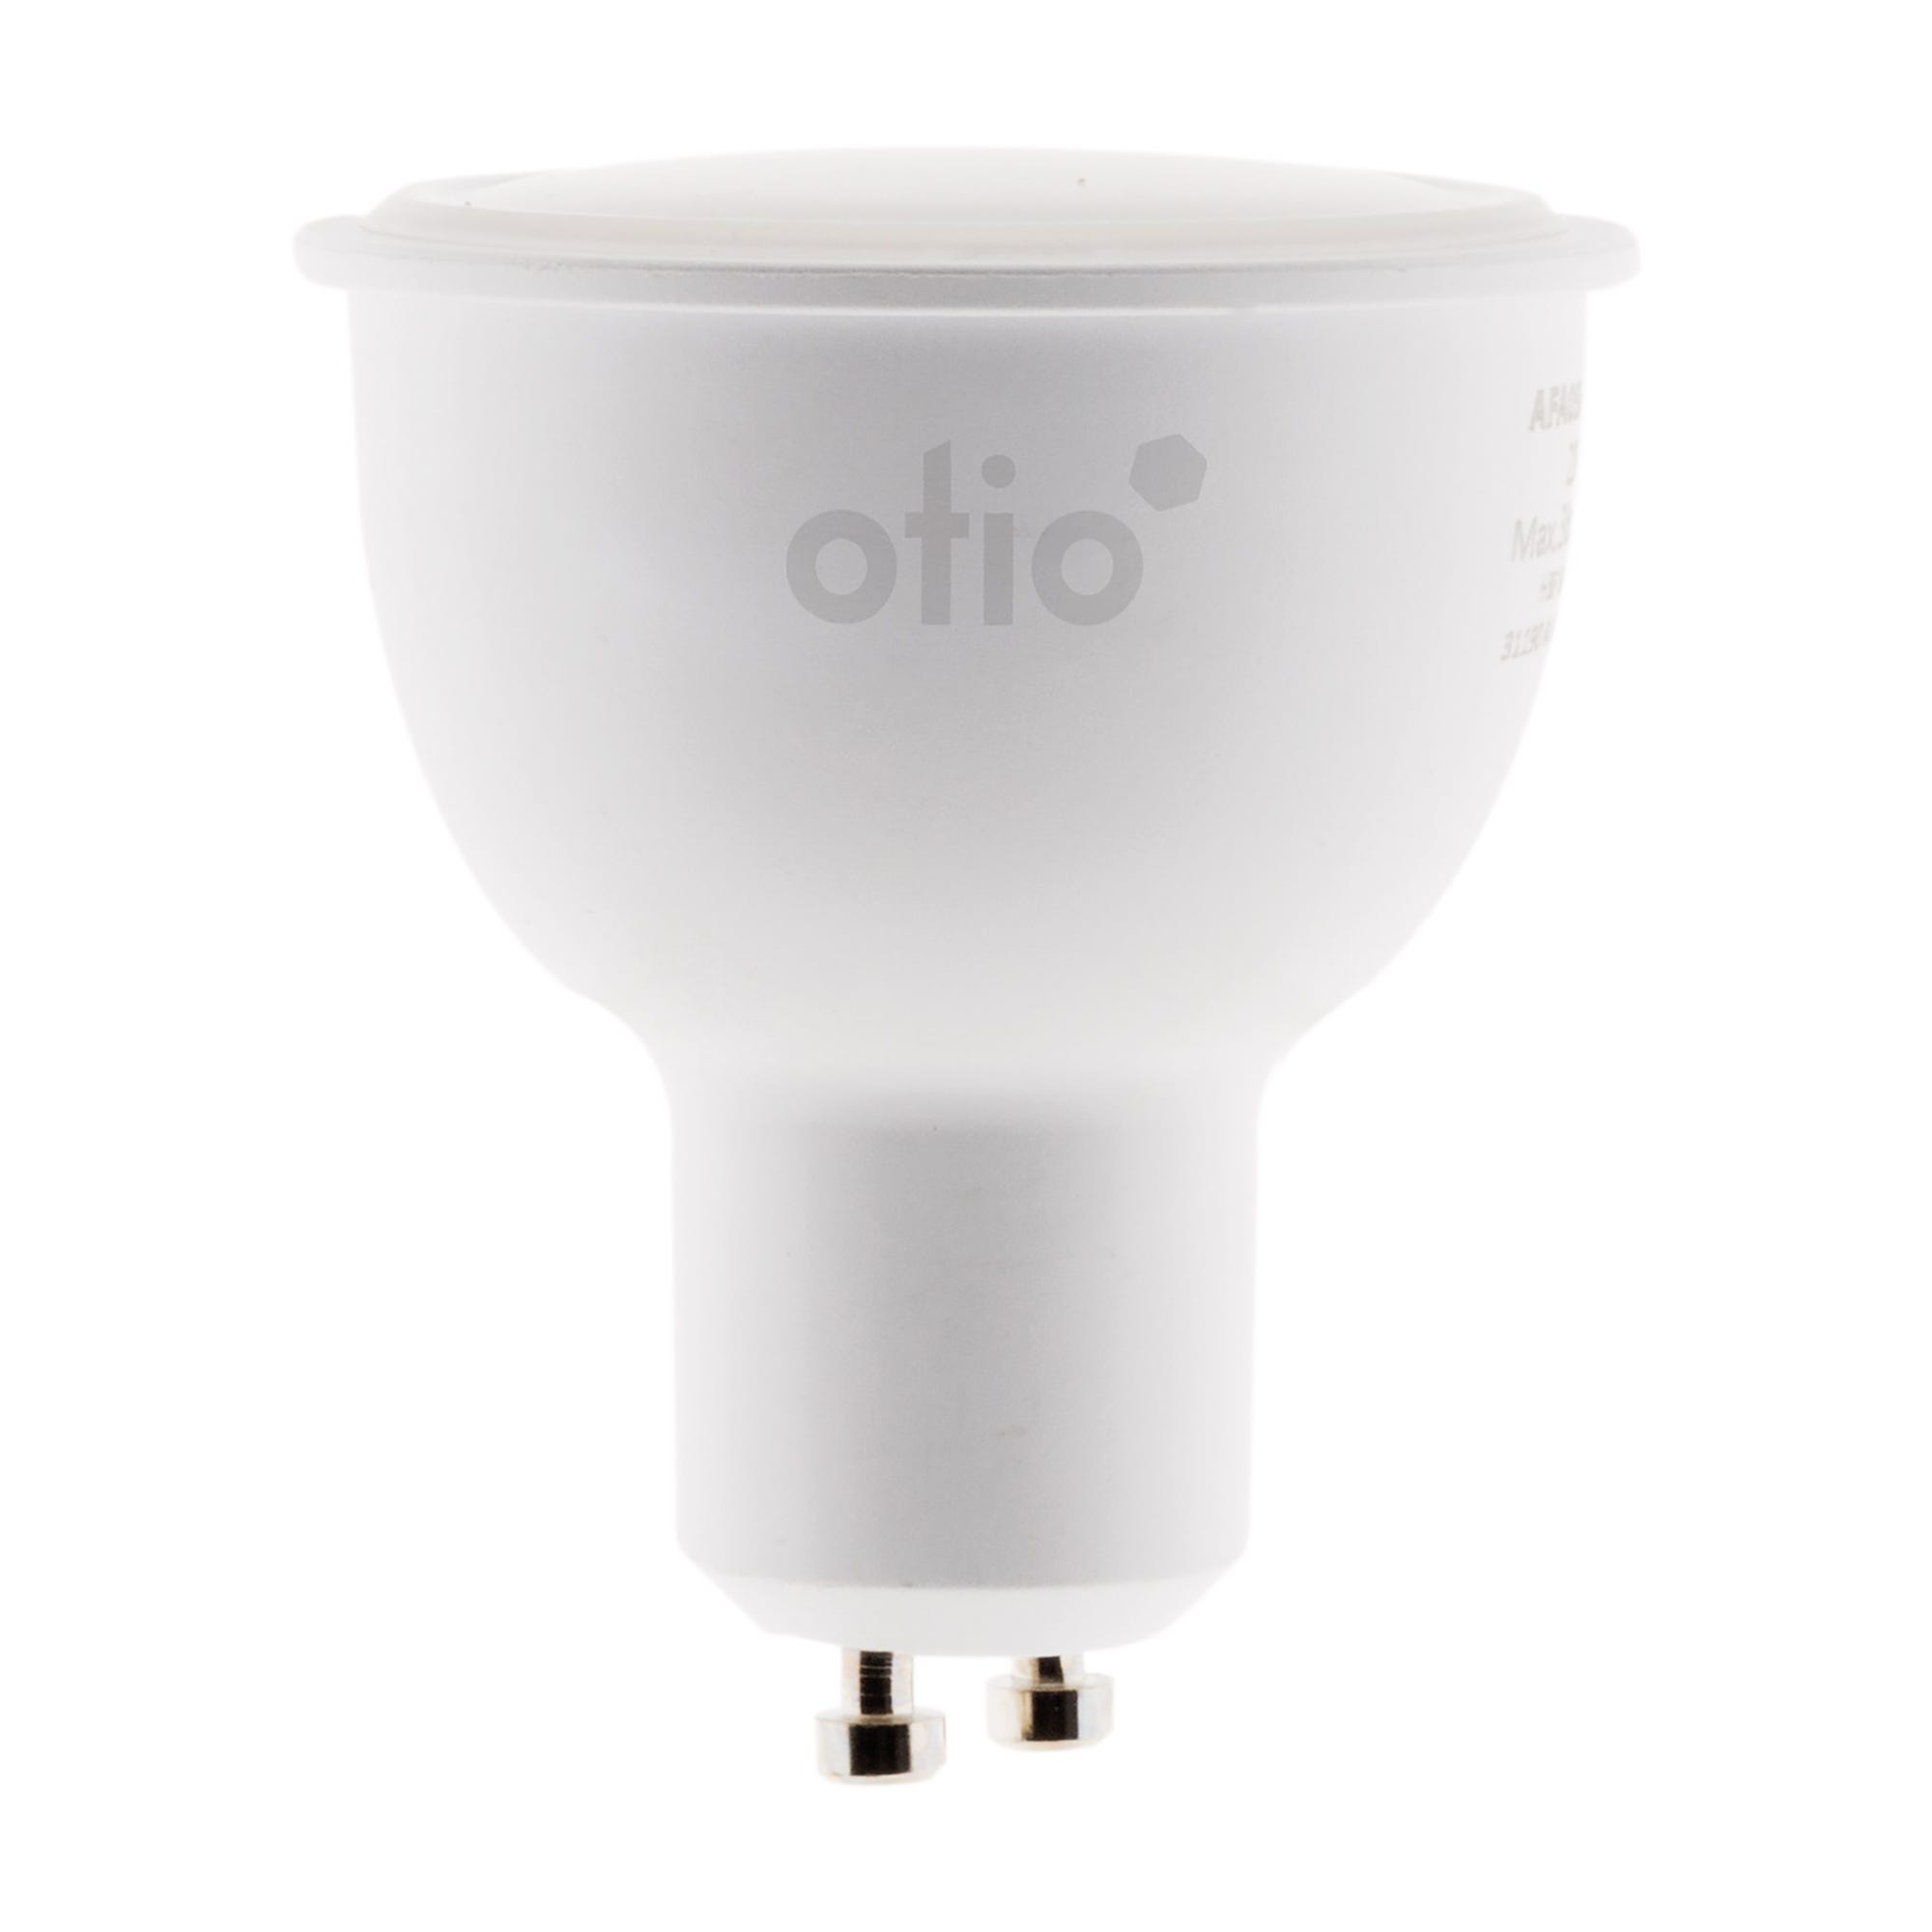 Ampoule connectée WIFI LED GU10 5.5W - Otio 1